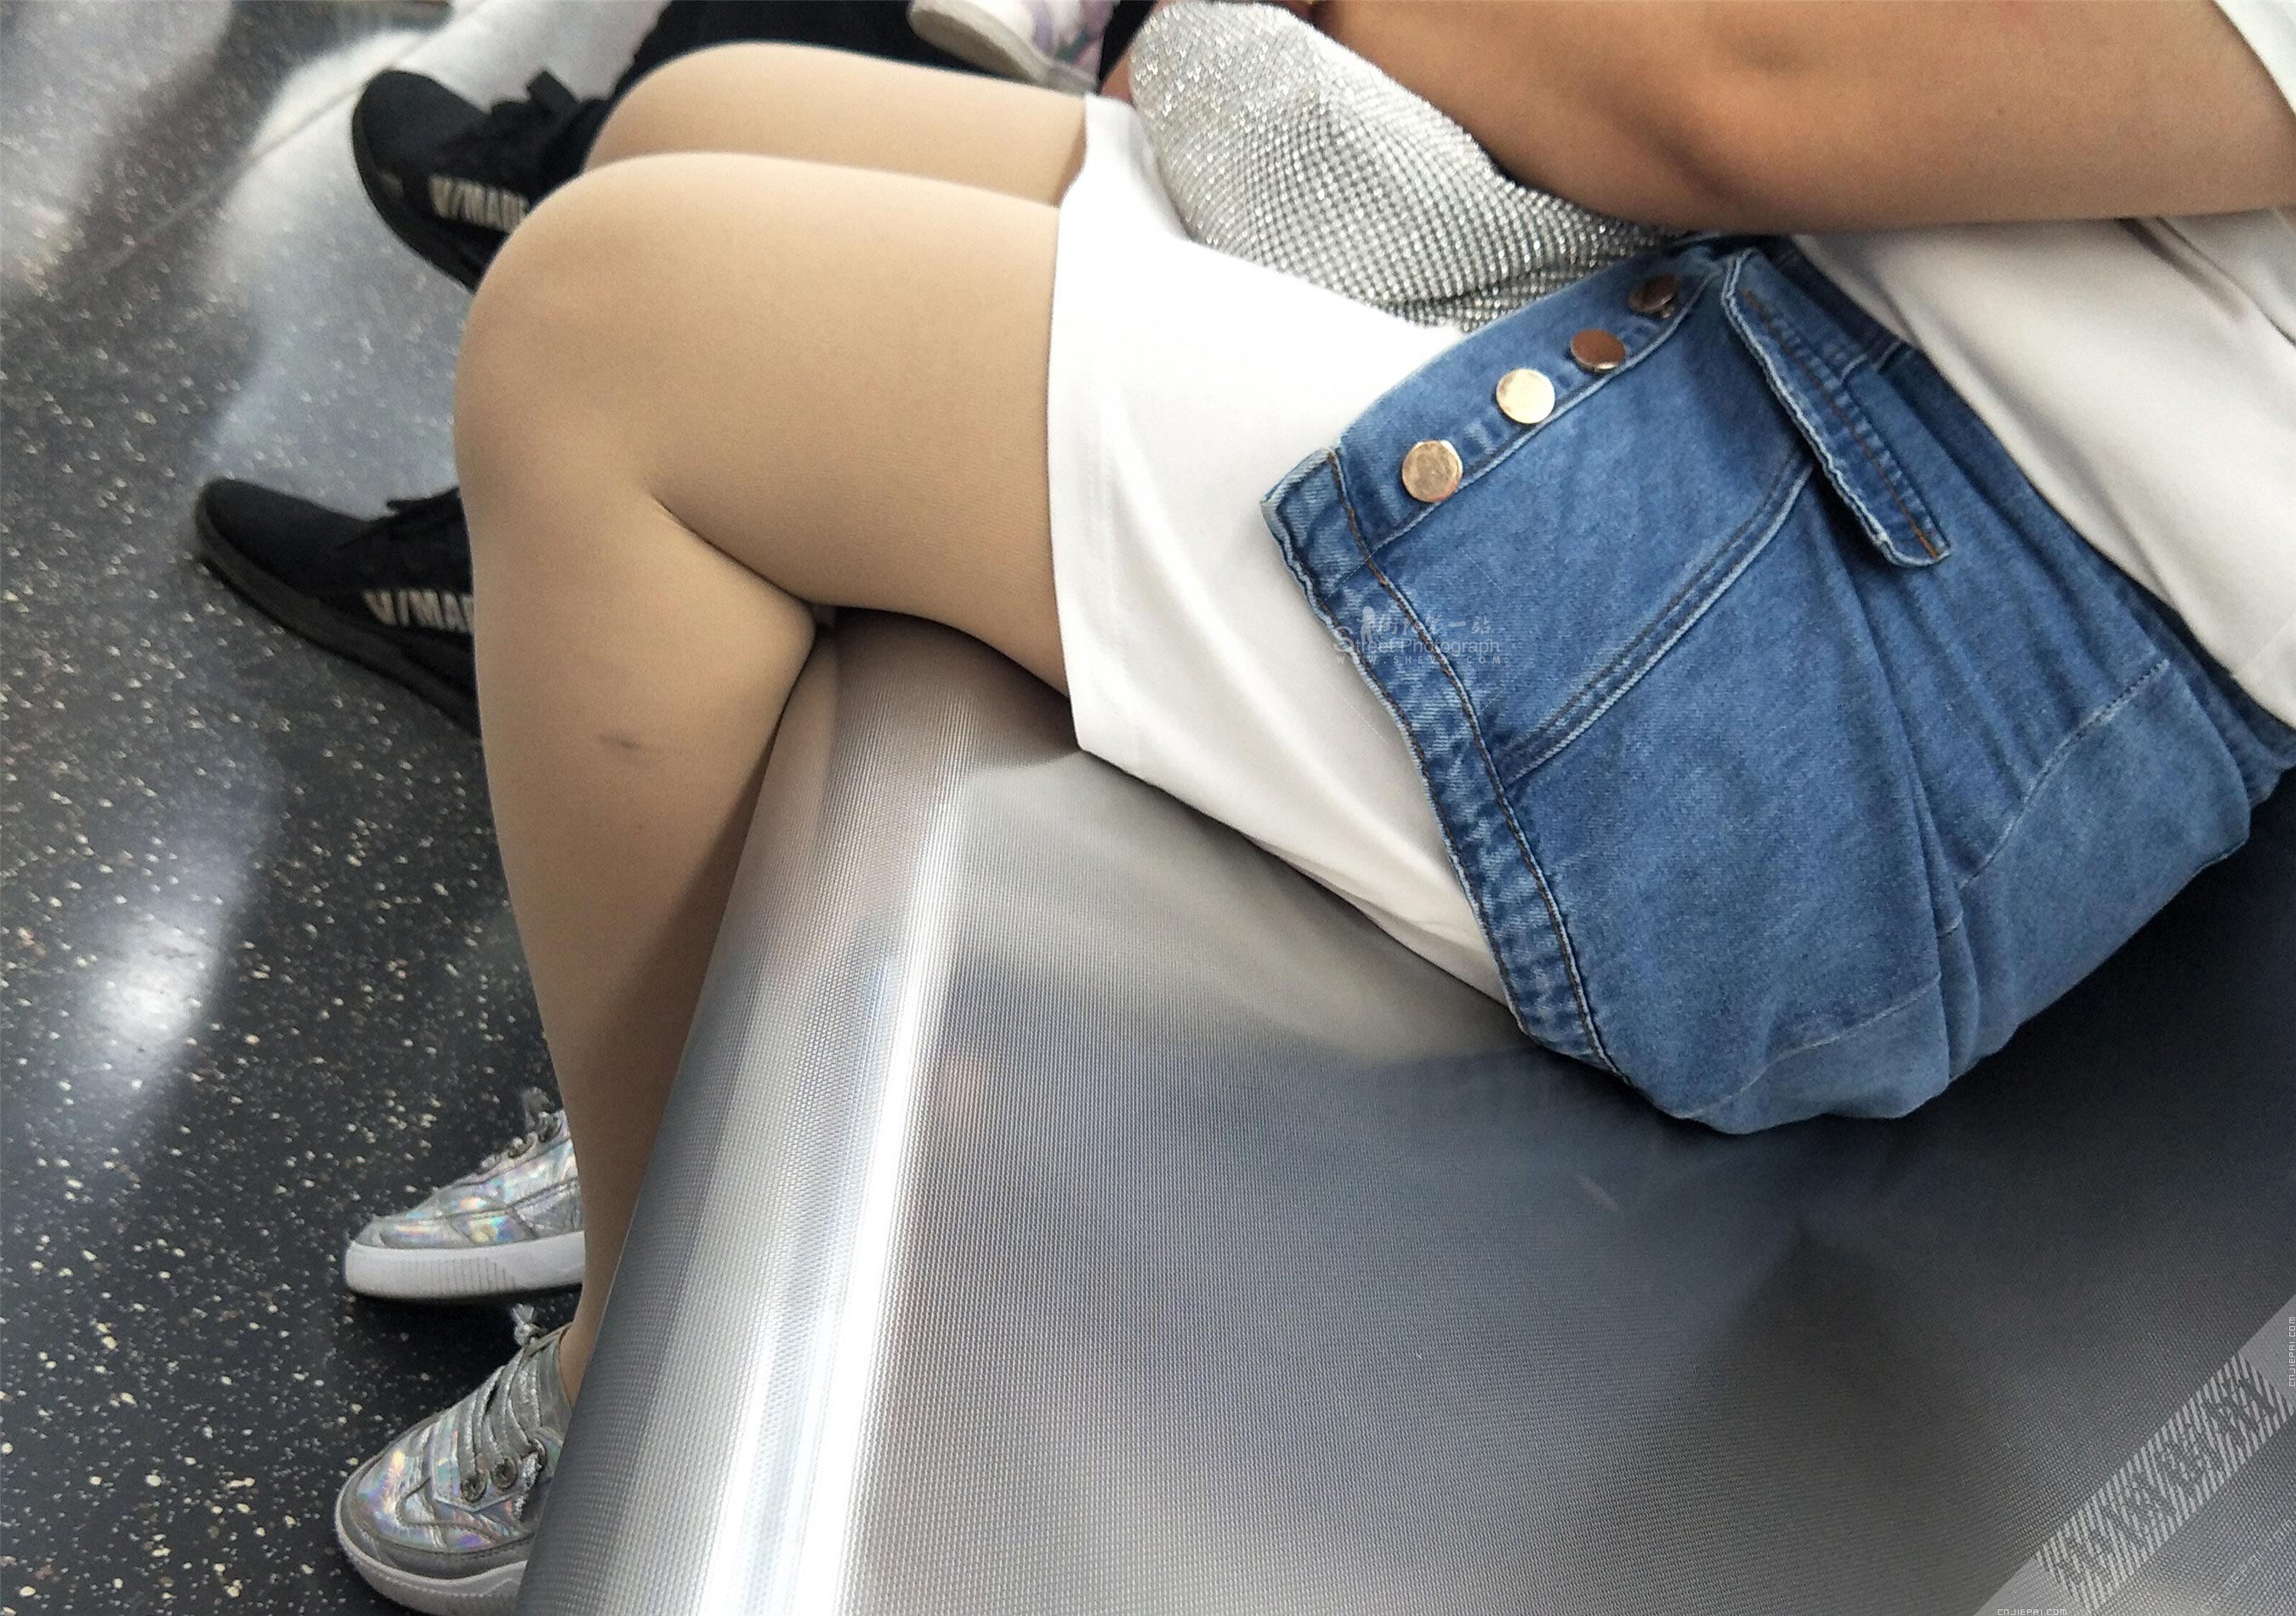 地铁里的短裙厚肉丝丰满少妇 图5